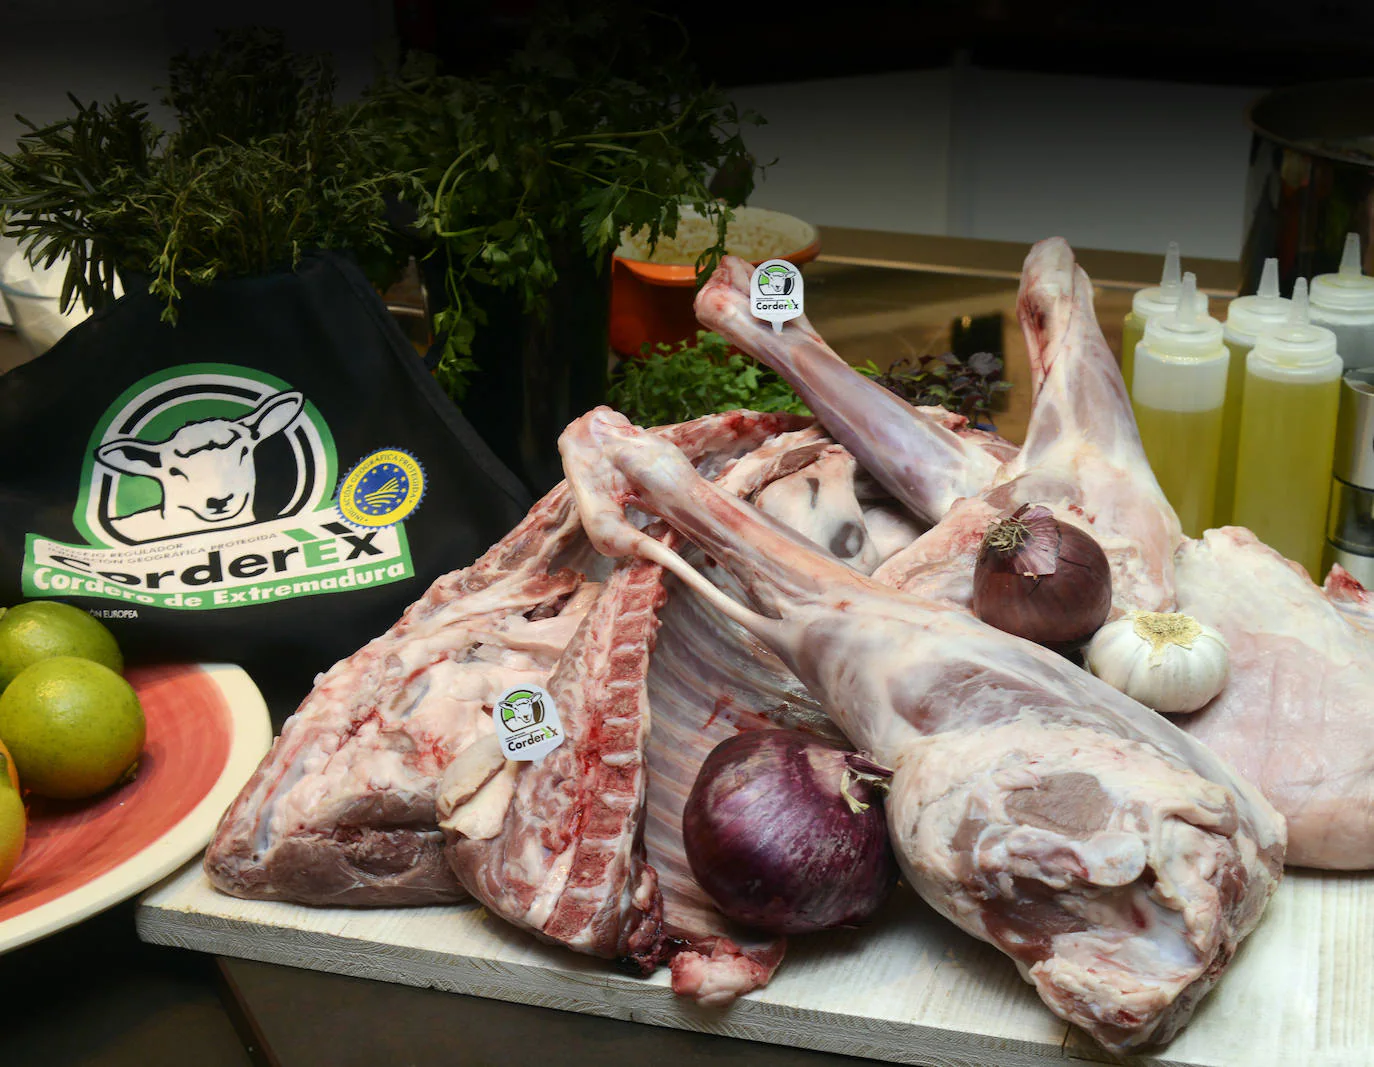 Corderex prevé un incremento de consumo de carne en el canal Horeca esta Navidad de hasta un 20 %